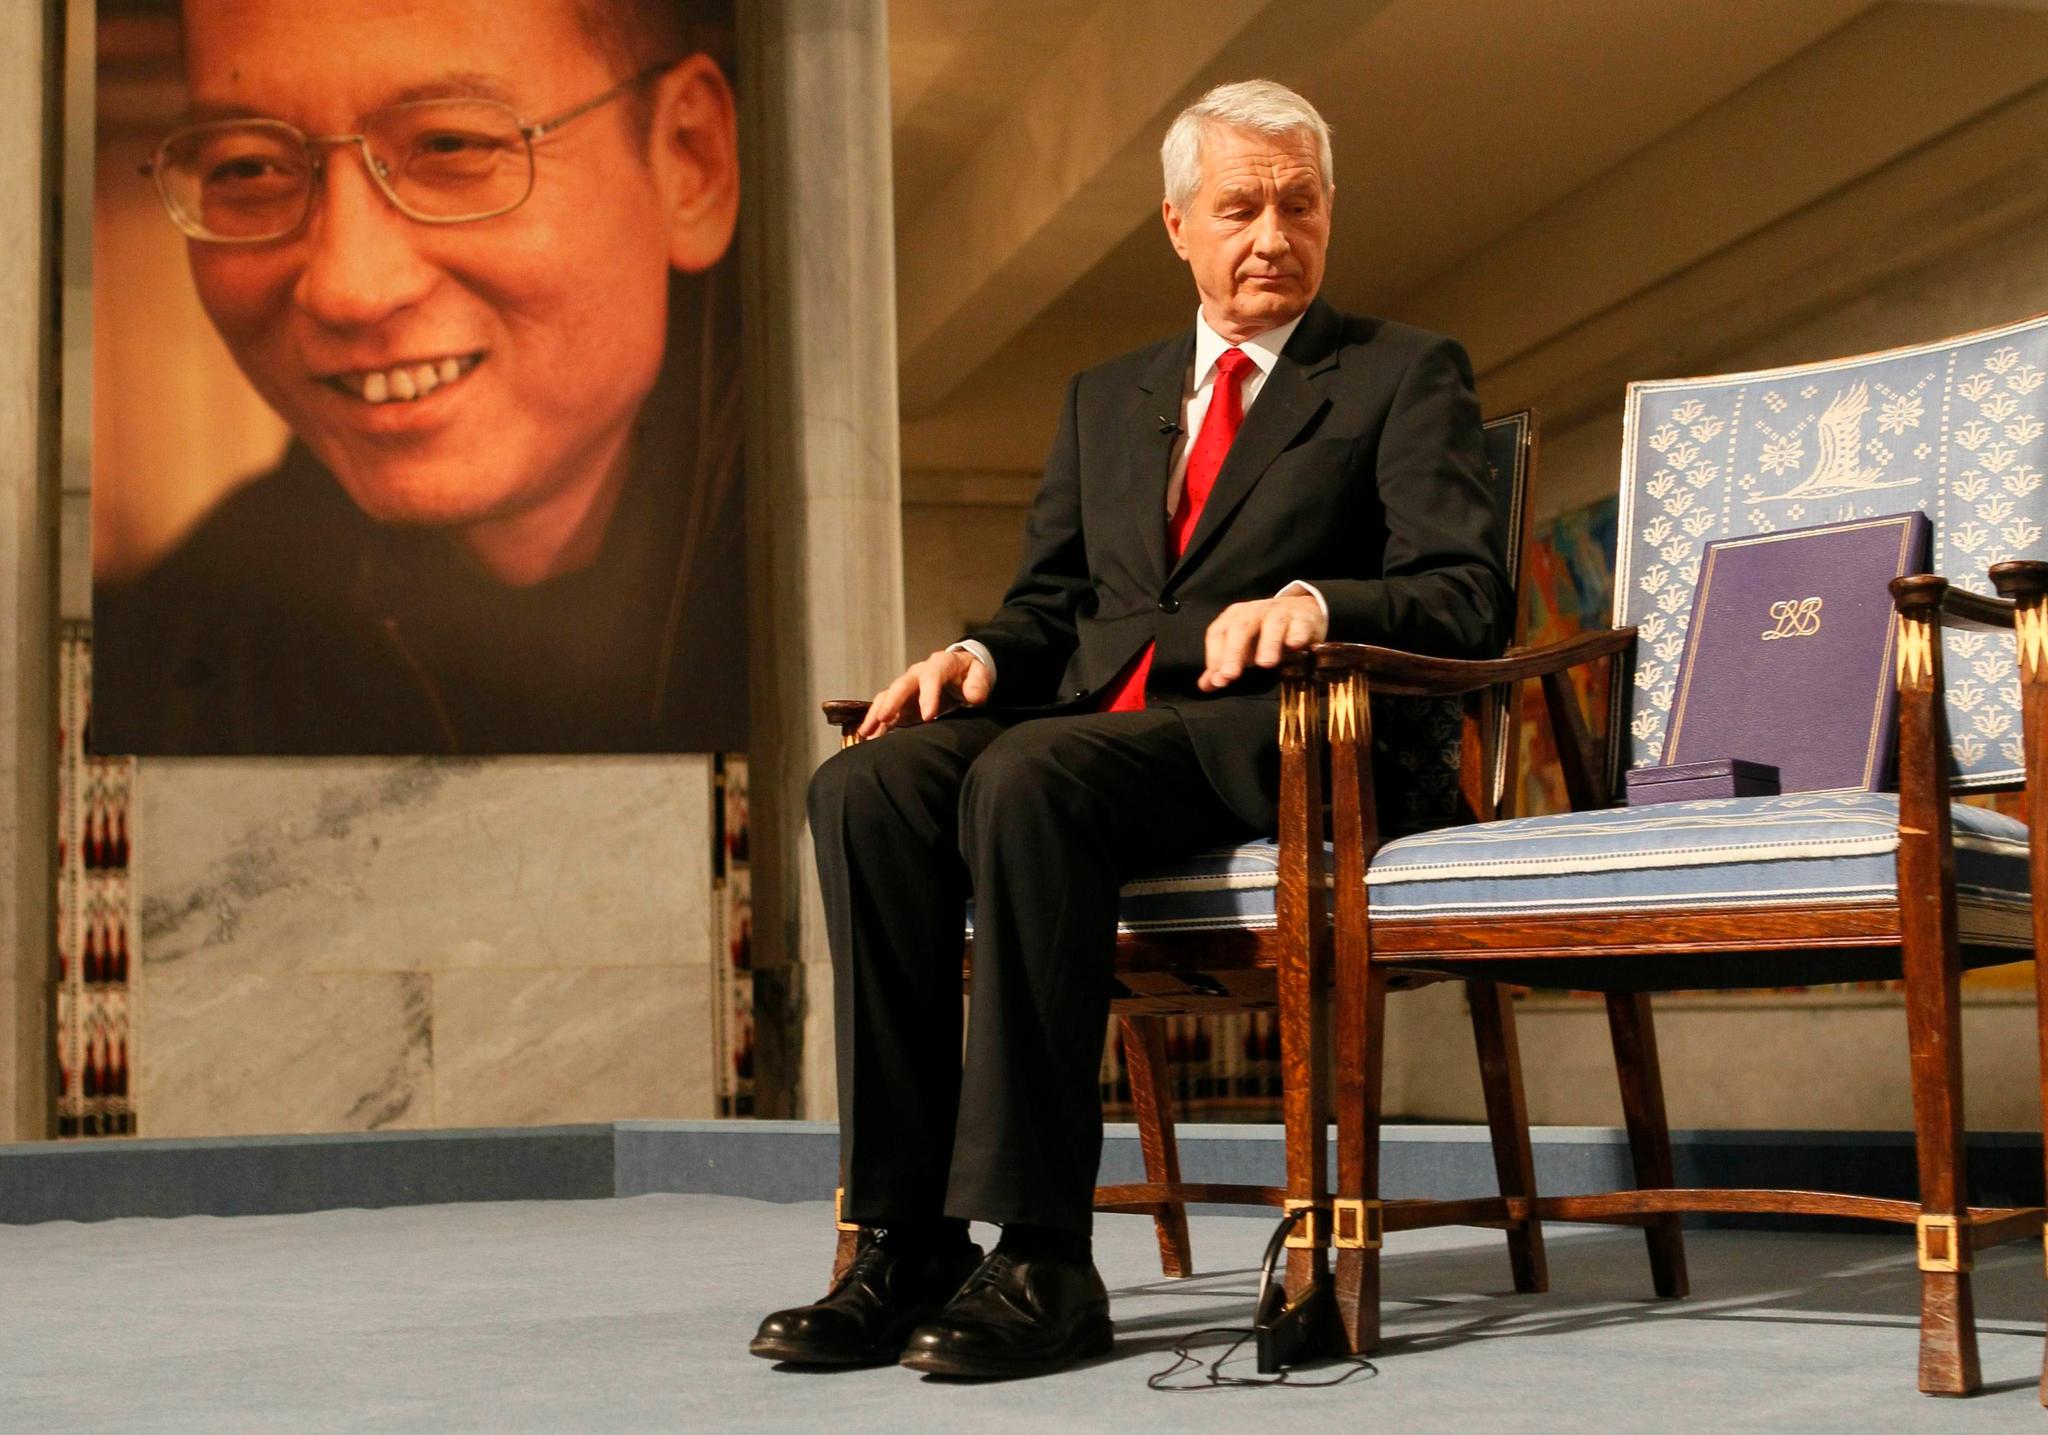 Liu Xiaobo fikk ikke komme til Oslo for å motta fredsprisen i 2010. I stedet markerte komitéleder Thorbjørn Jagland fredsprisvinnerens fravær med en tom stol i Oslo rådhus.